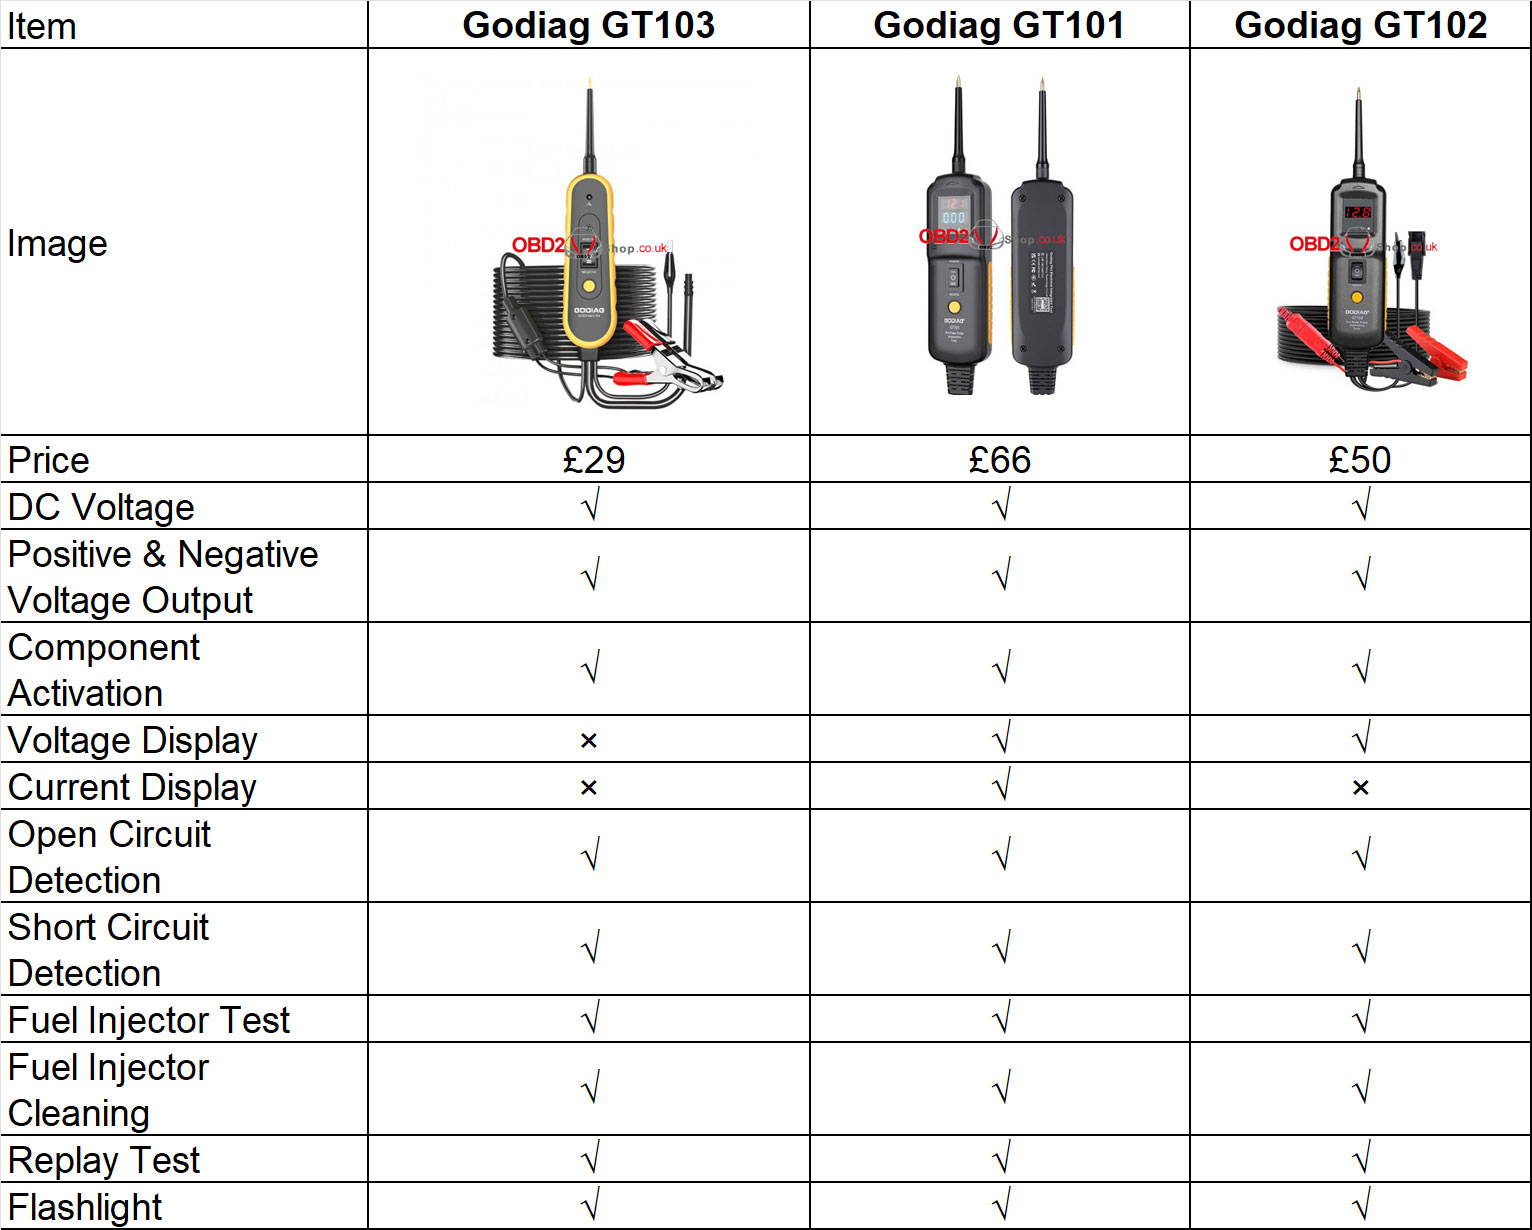 godiag-gt103-vs-gt101-vs-gt102-1